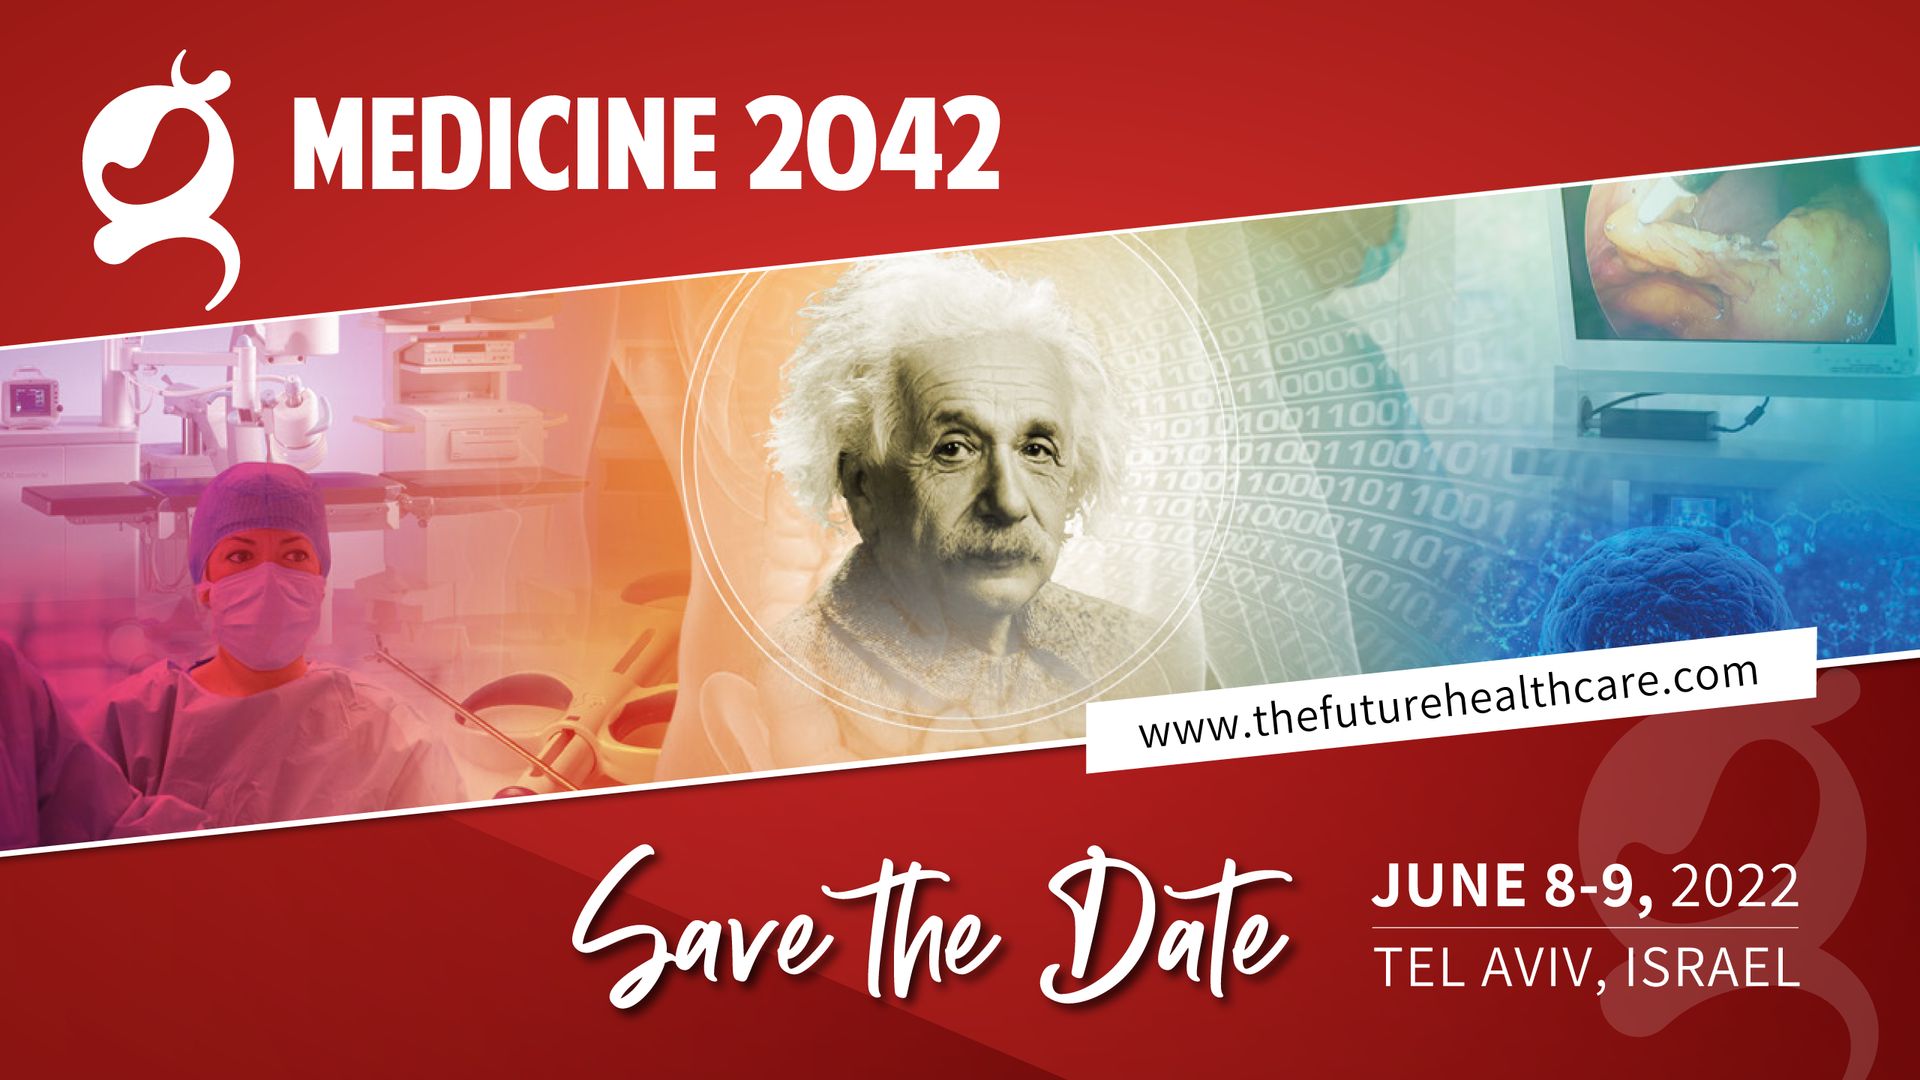 Medicine 2042 Congress